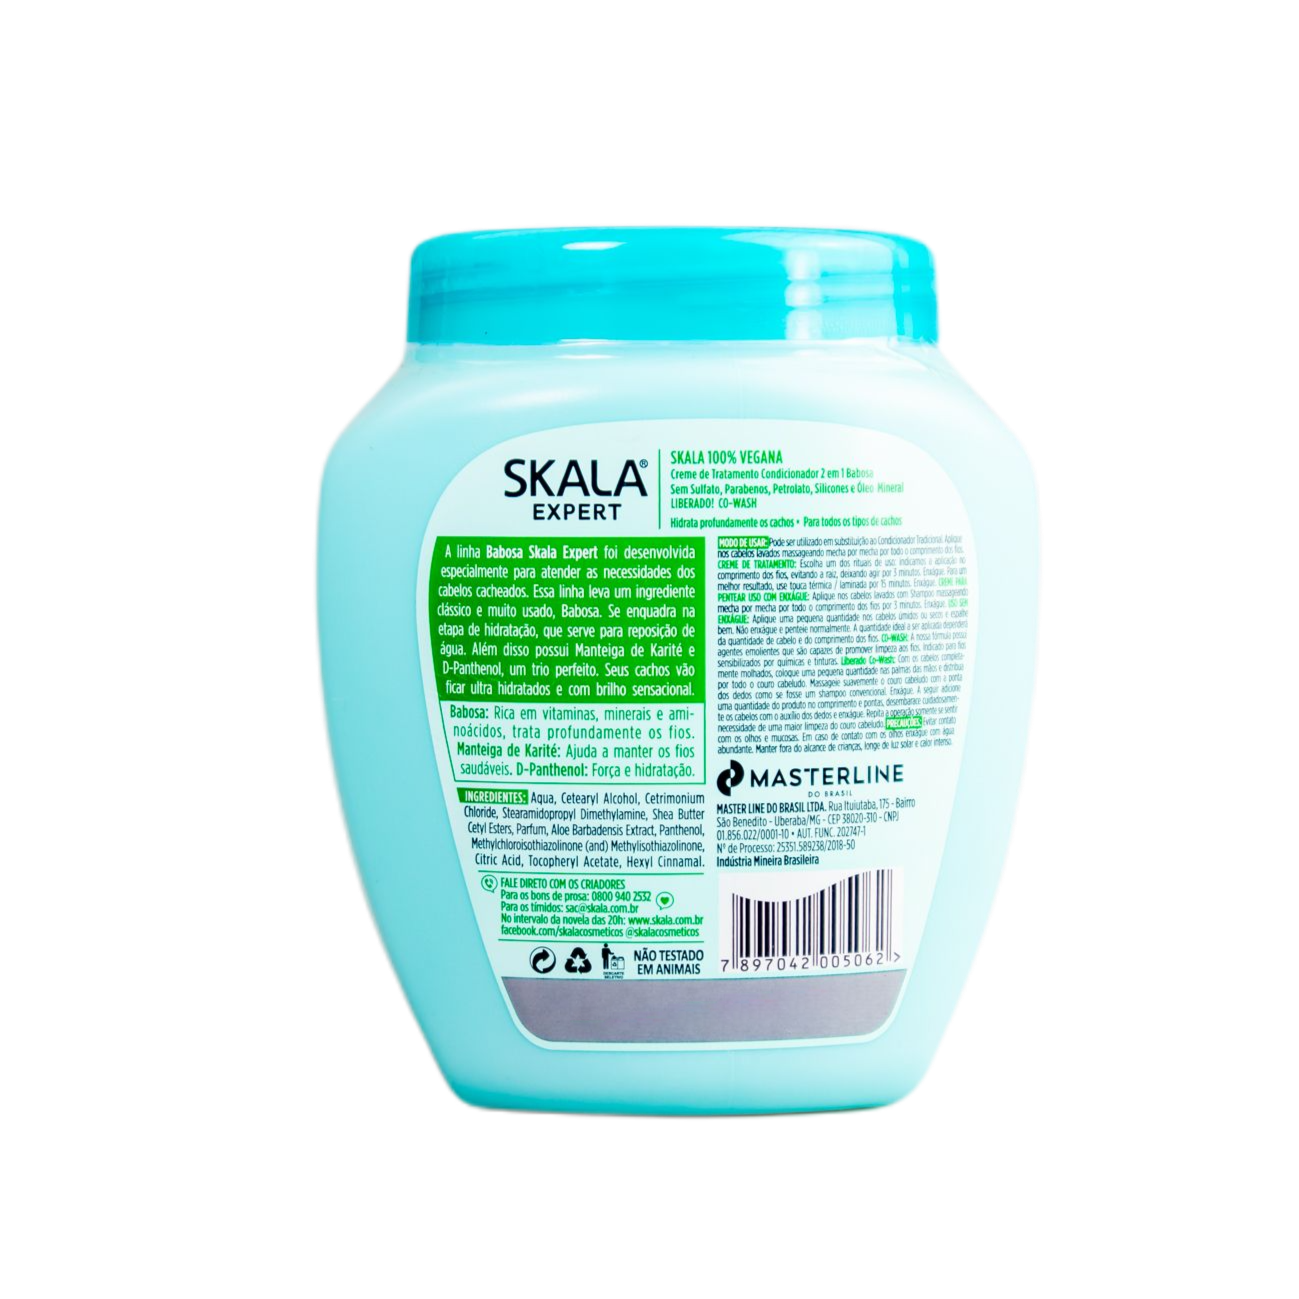 Skala Treatment Cream Creme De Tratamento 2 Em 1 Babosa / 2 Treatment Cream Aloe 1 Treatment Cream - Skala